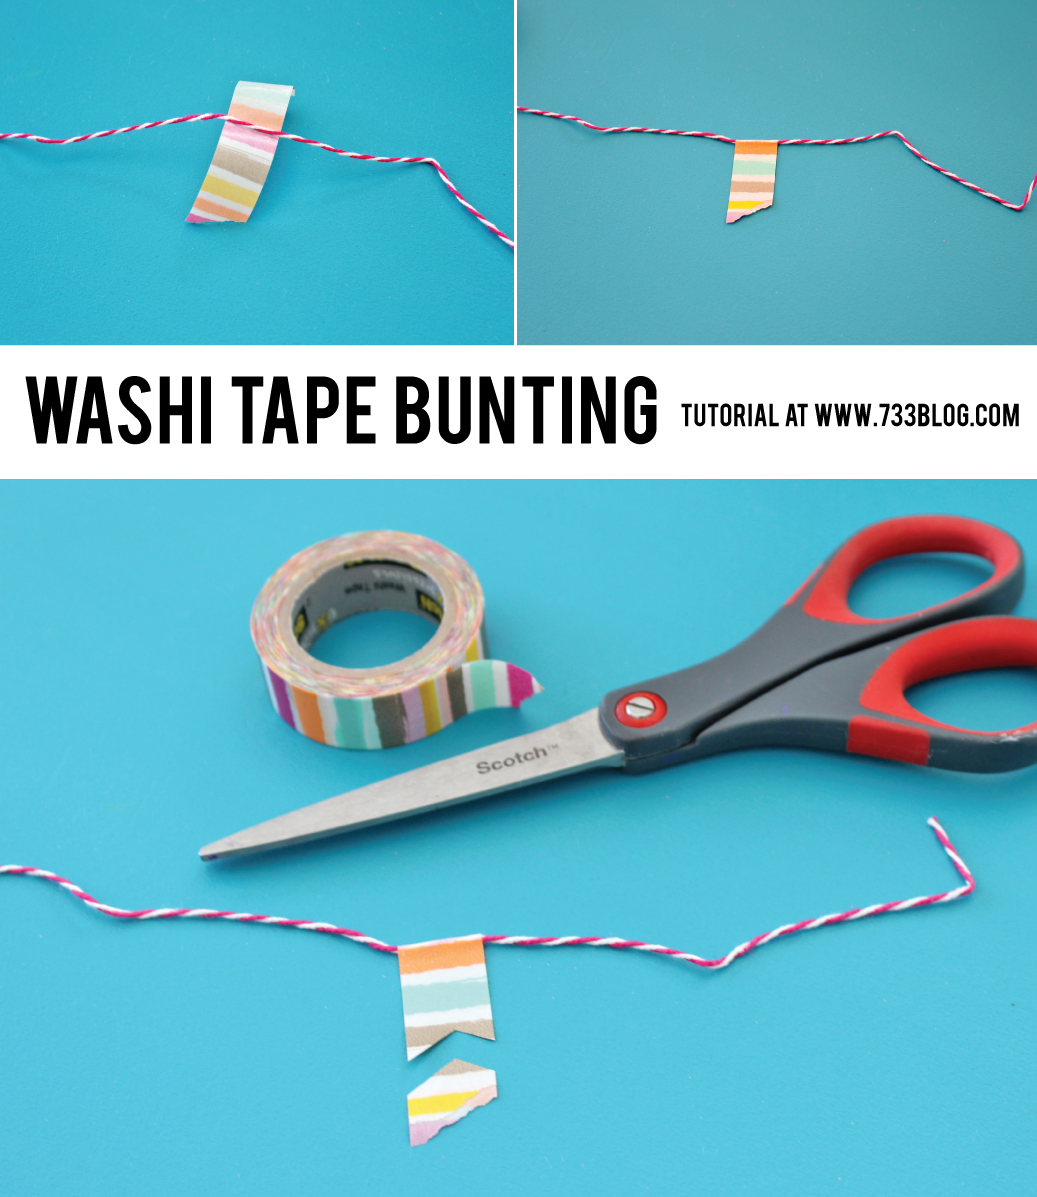 Washi Tape Bunting Tutorial